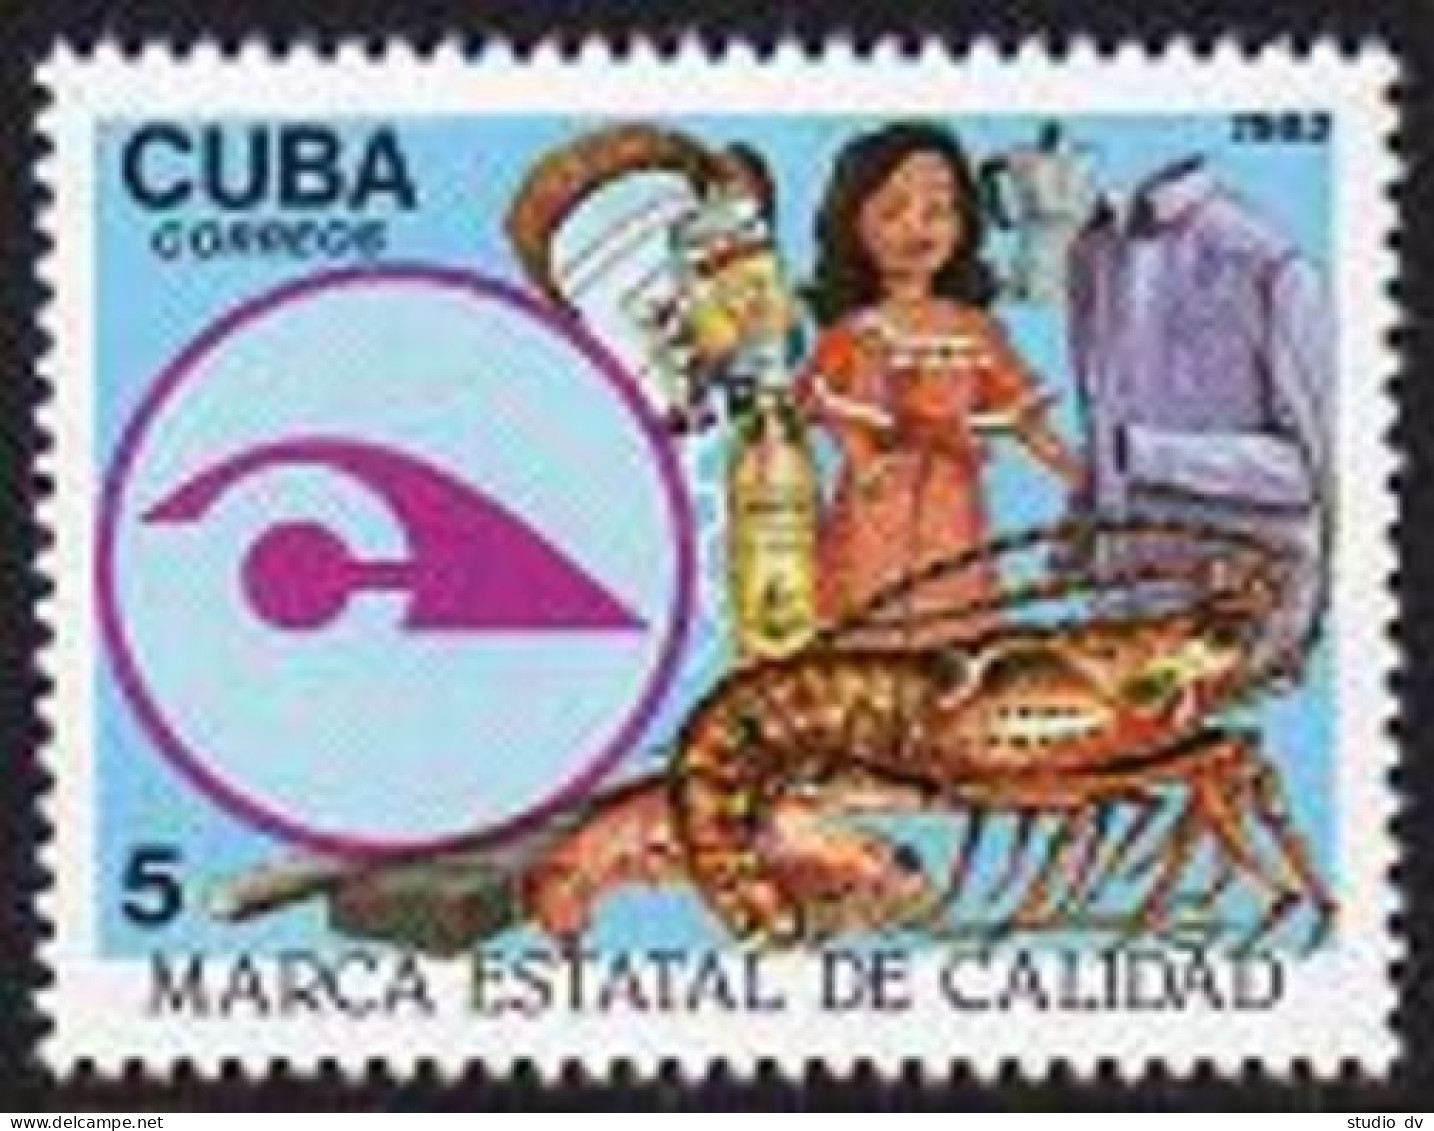 Cuba 2613,MNH.Michel 2762. State Quality Seal,Lobster,1983. - Ongebruikt